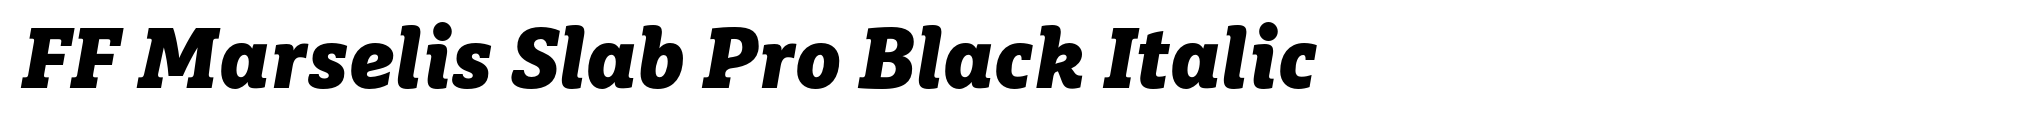 FF Marselis Slab Pro Black Italic image